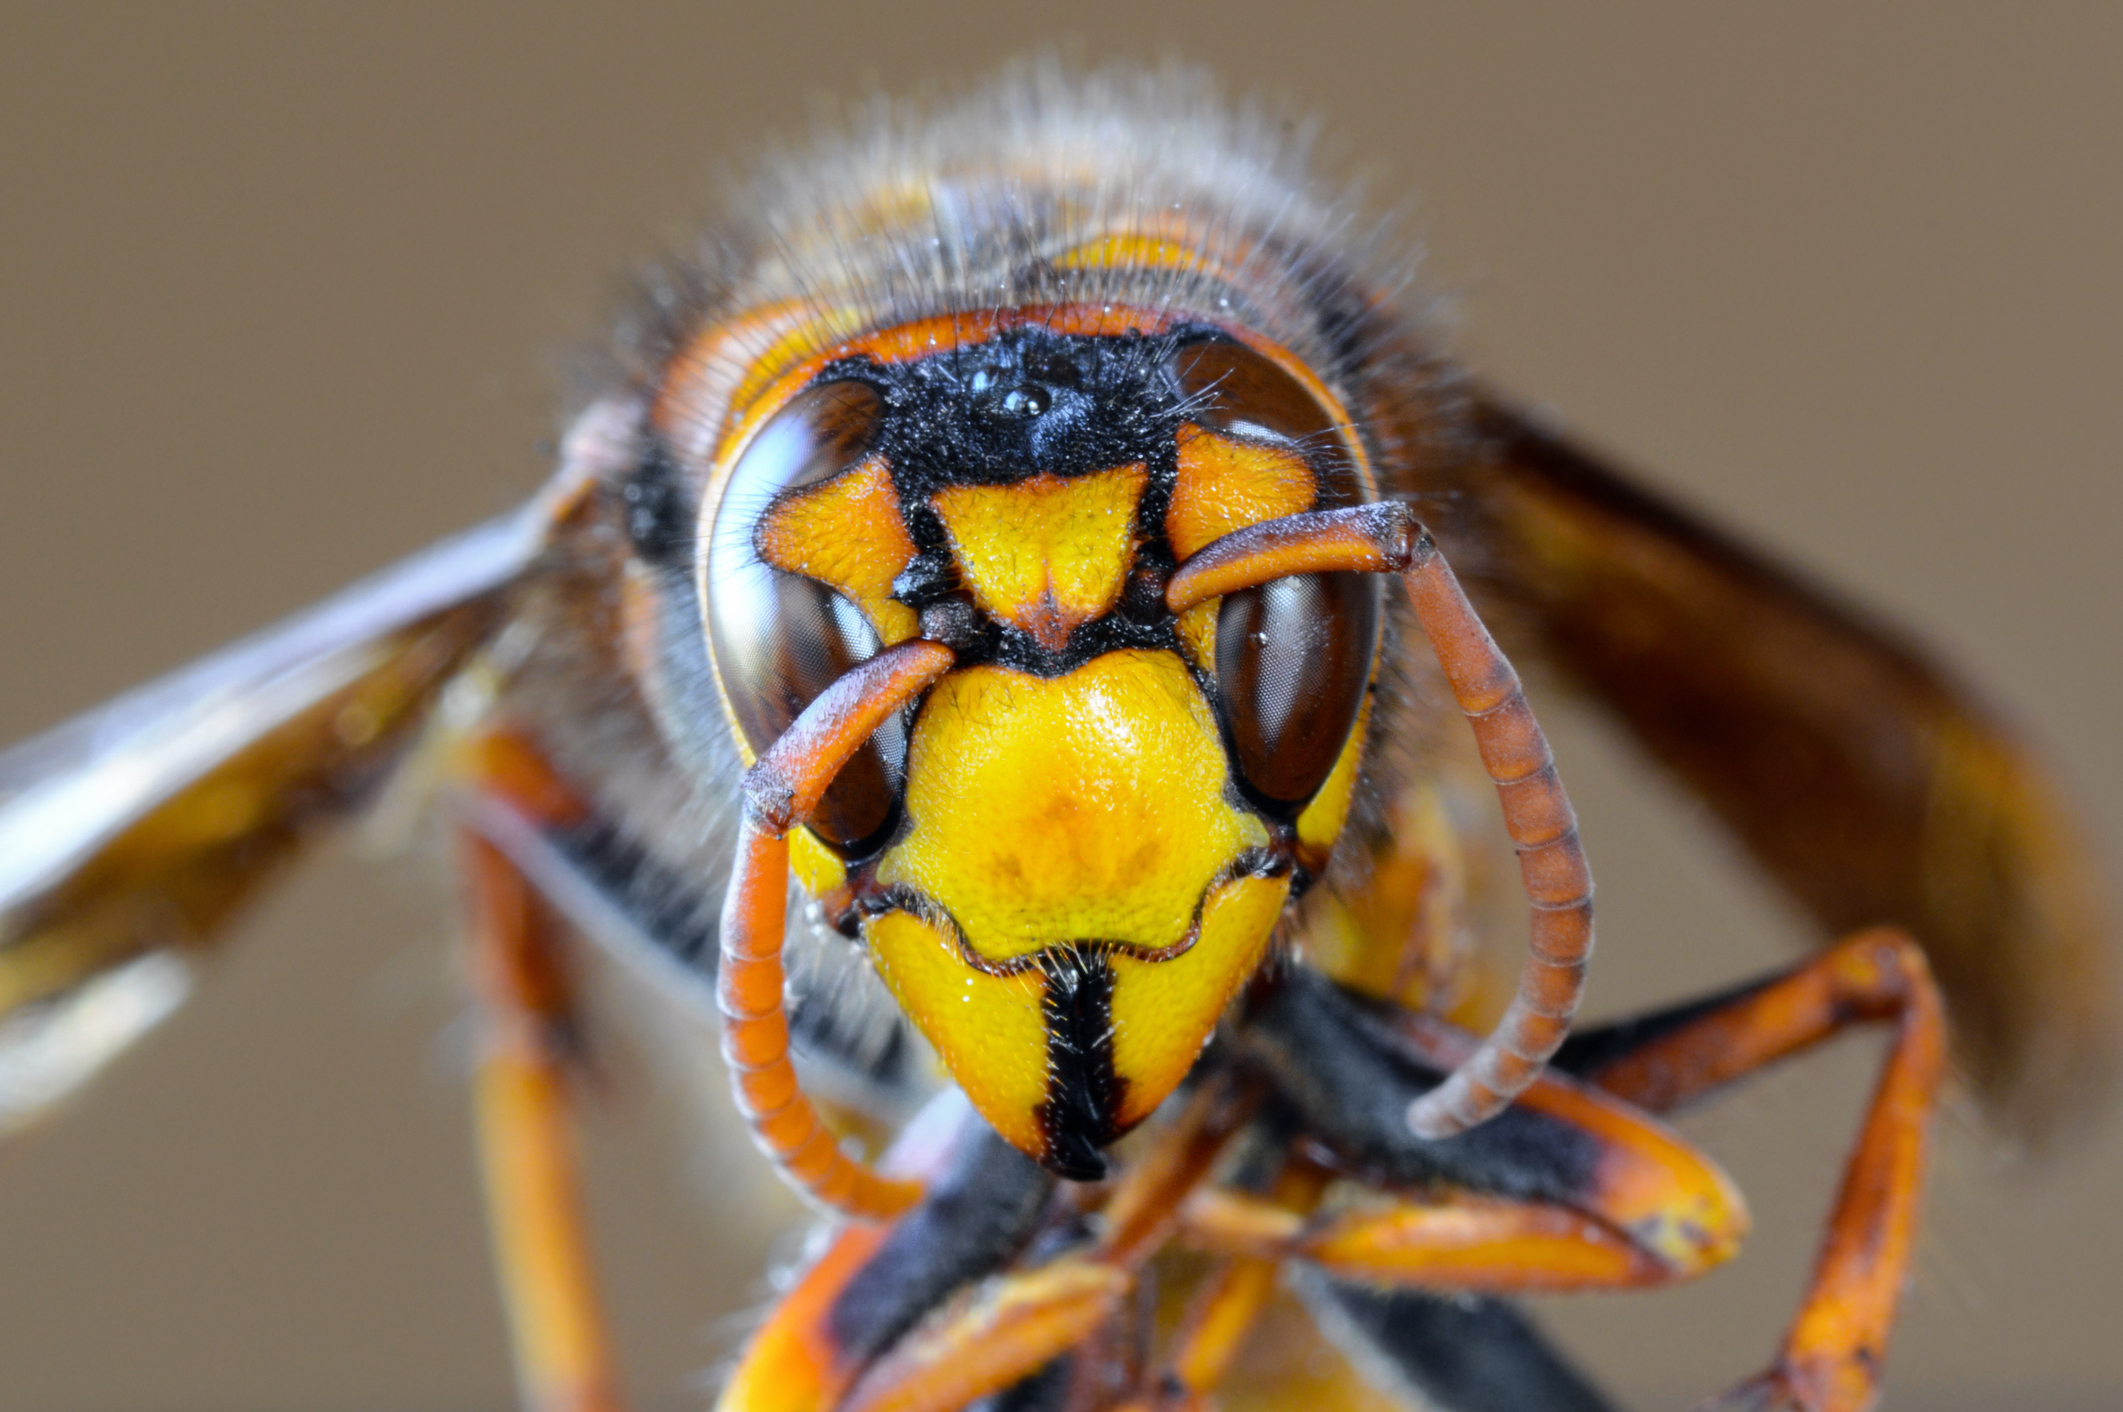 El avispón asiático gigante podría causar muchos problemas a las especies de abejas en América del Norte. Animales con impresionantes mecanismos de defensa